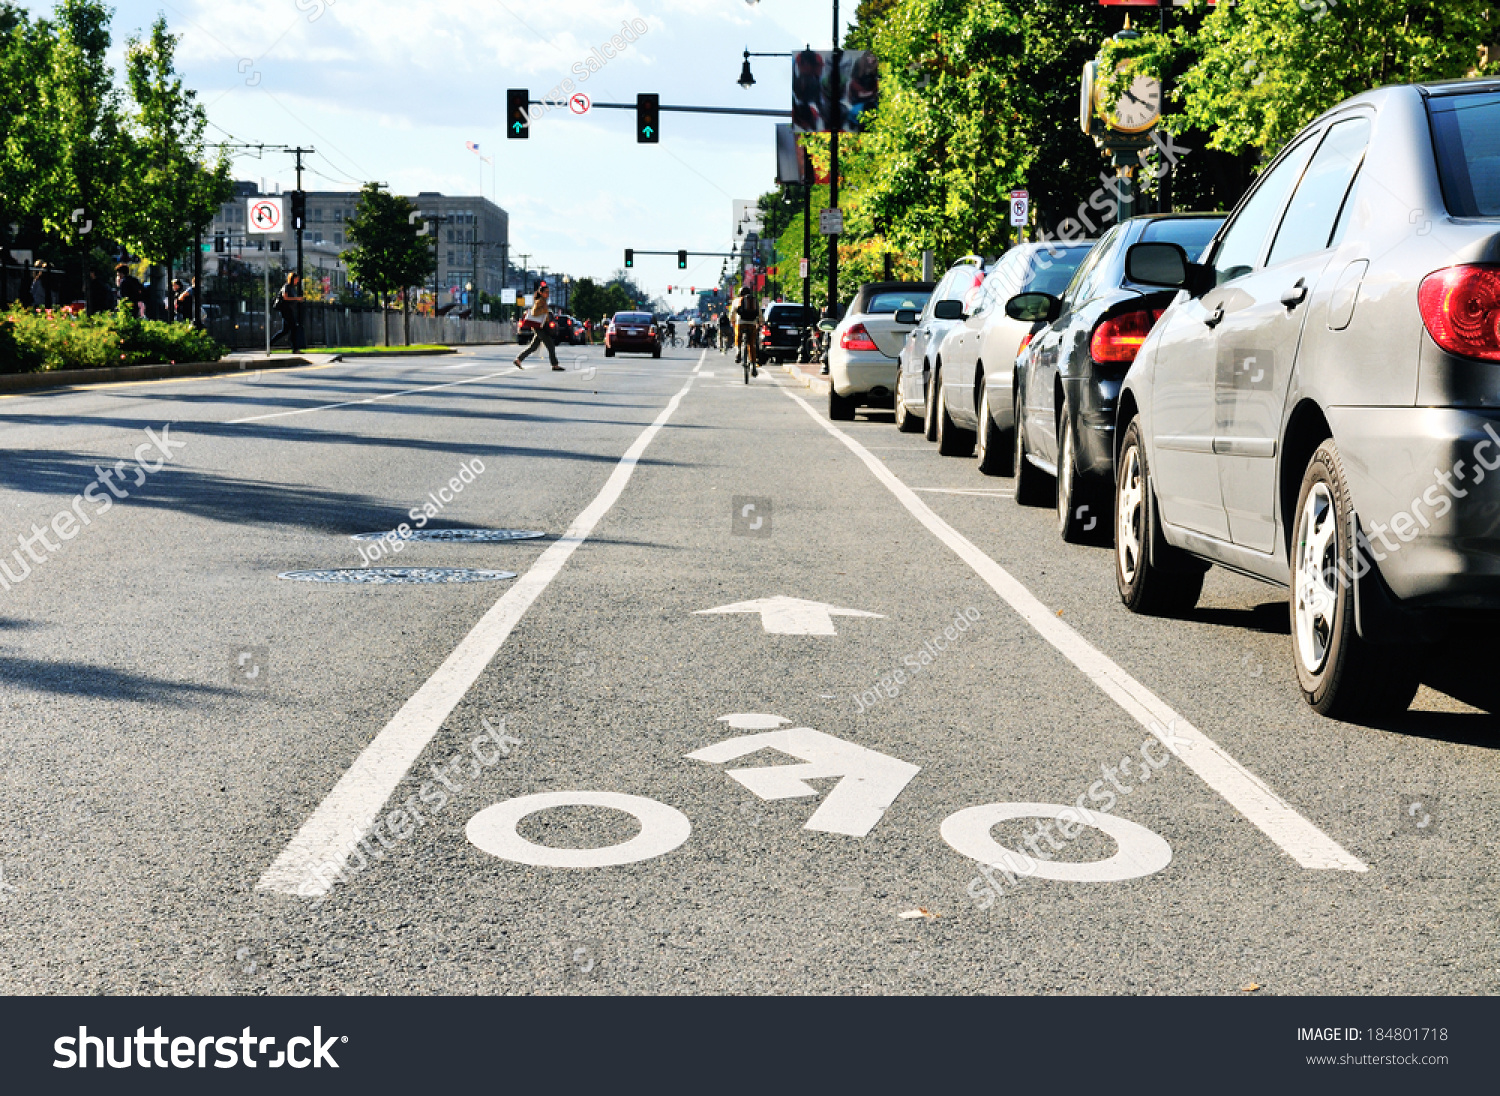 Bike lane in city street #184801718